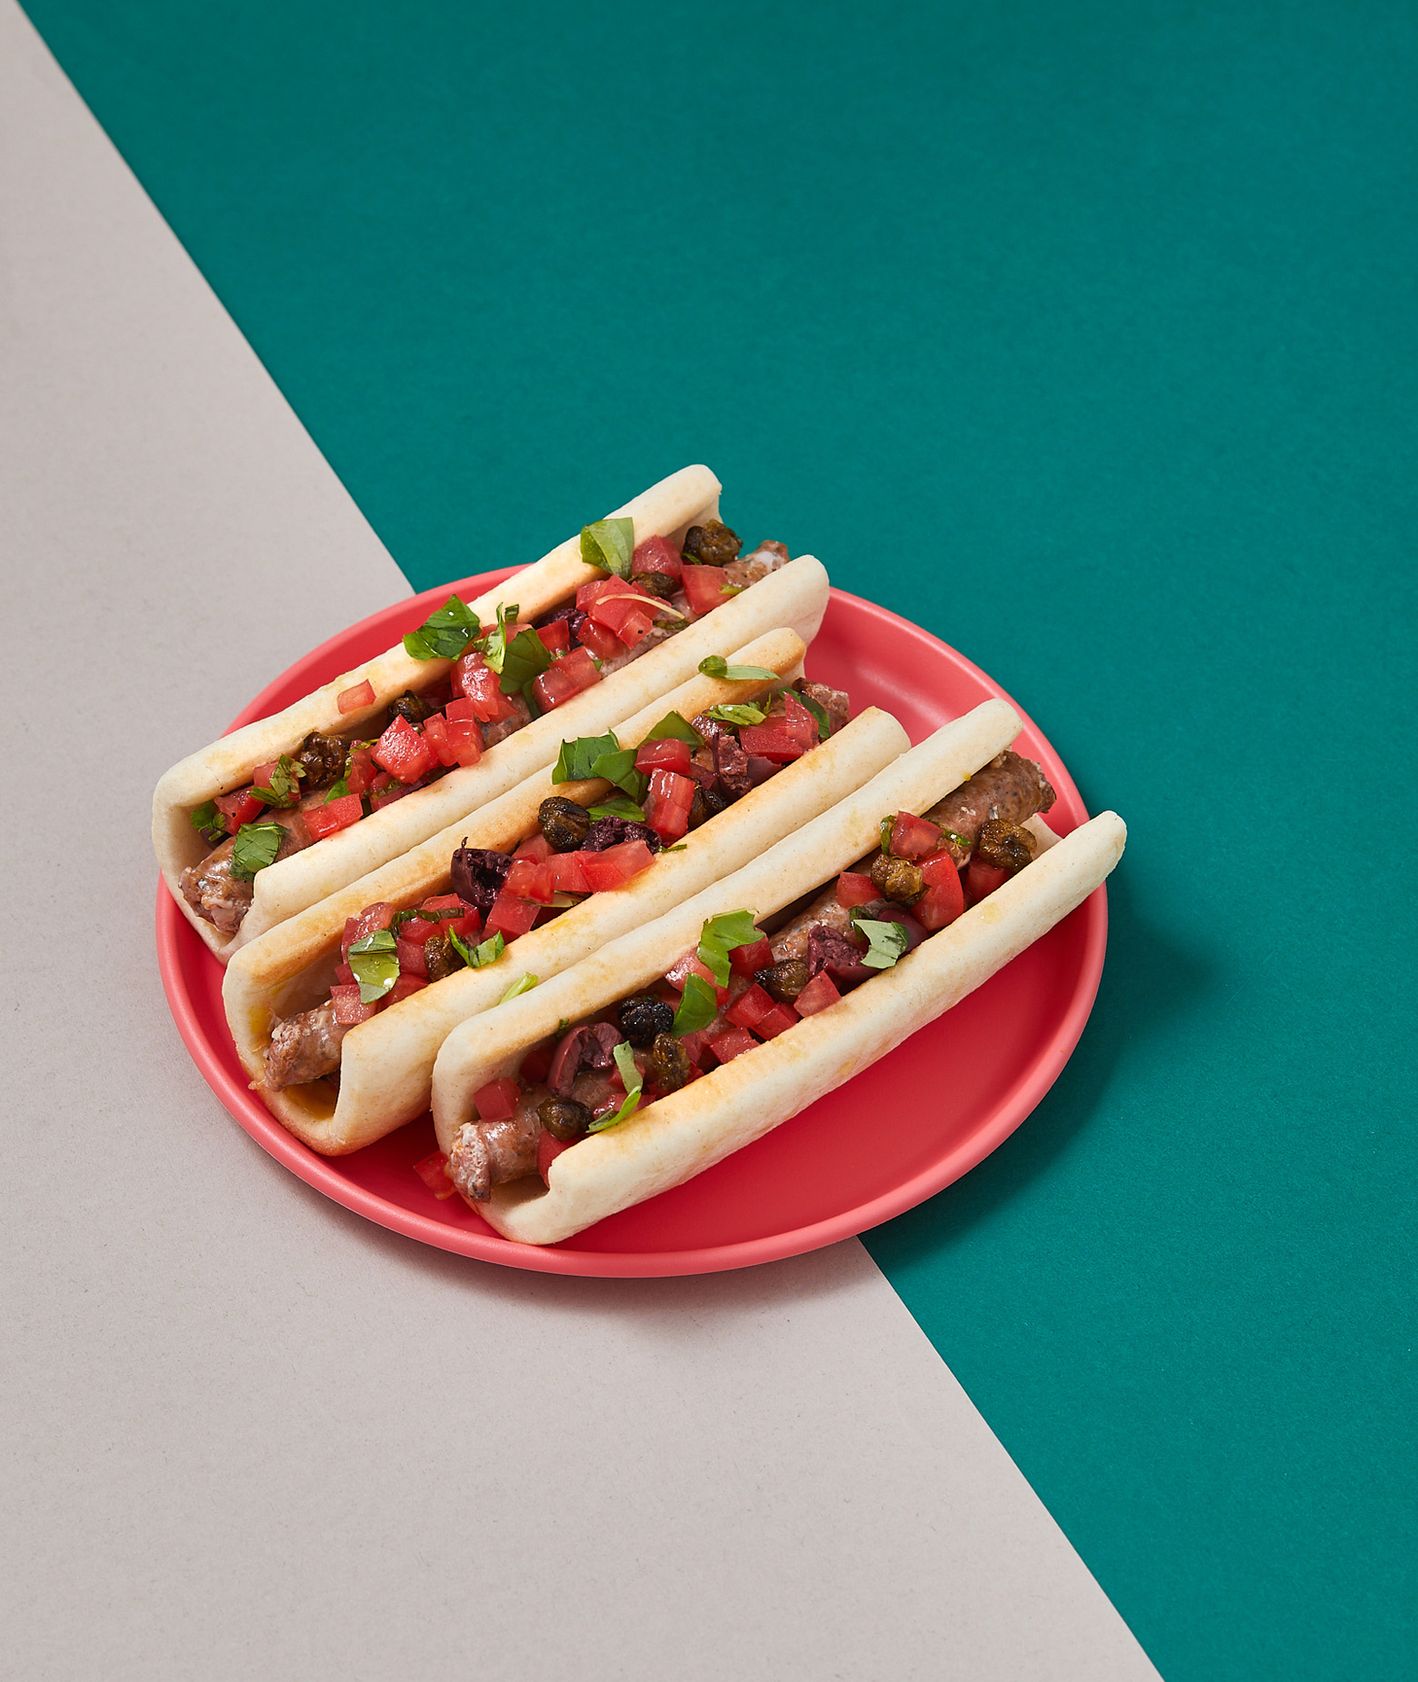 Hot dog śródziemnomorski z kiełbasą merguez, pomidorem i bazylią (fot. Maciek Niemojewski)